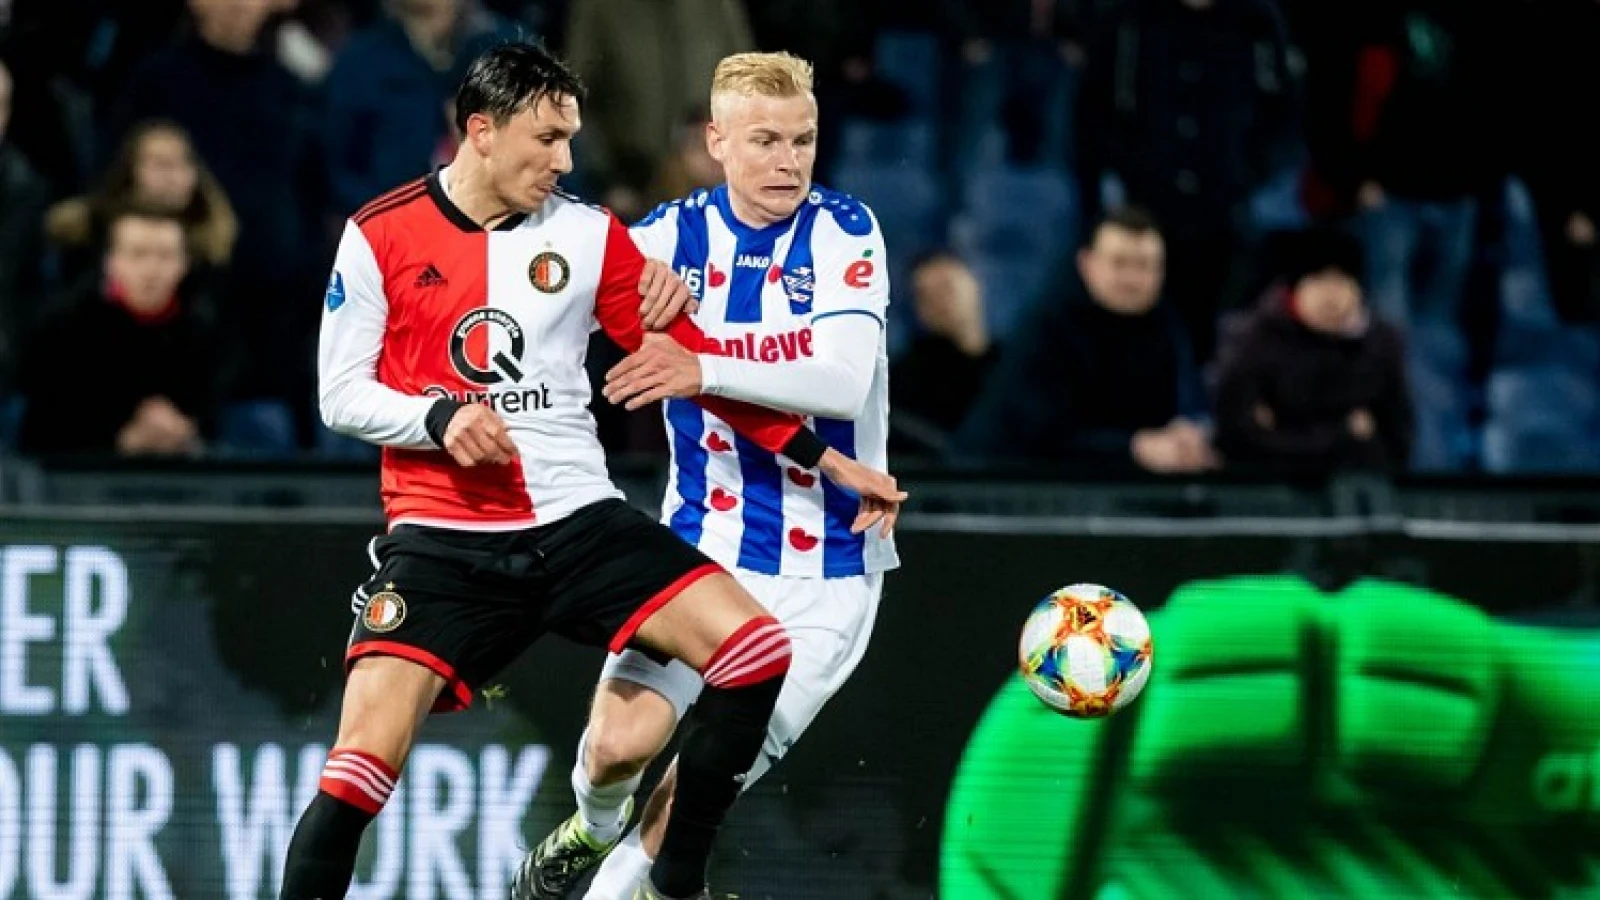 LIVE | Feyenoord - sc Heerenveen 3-0 | Einde wedstrijd